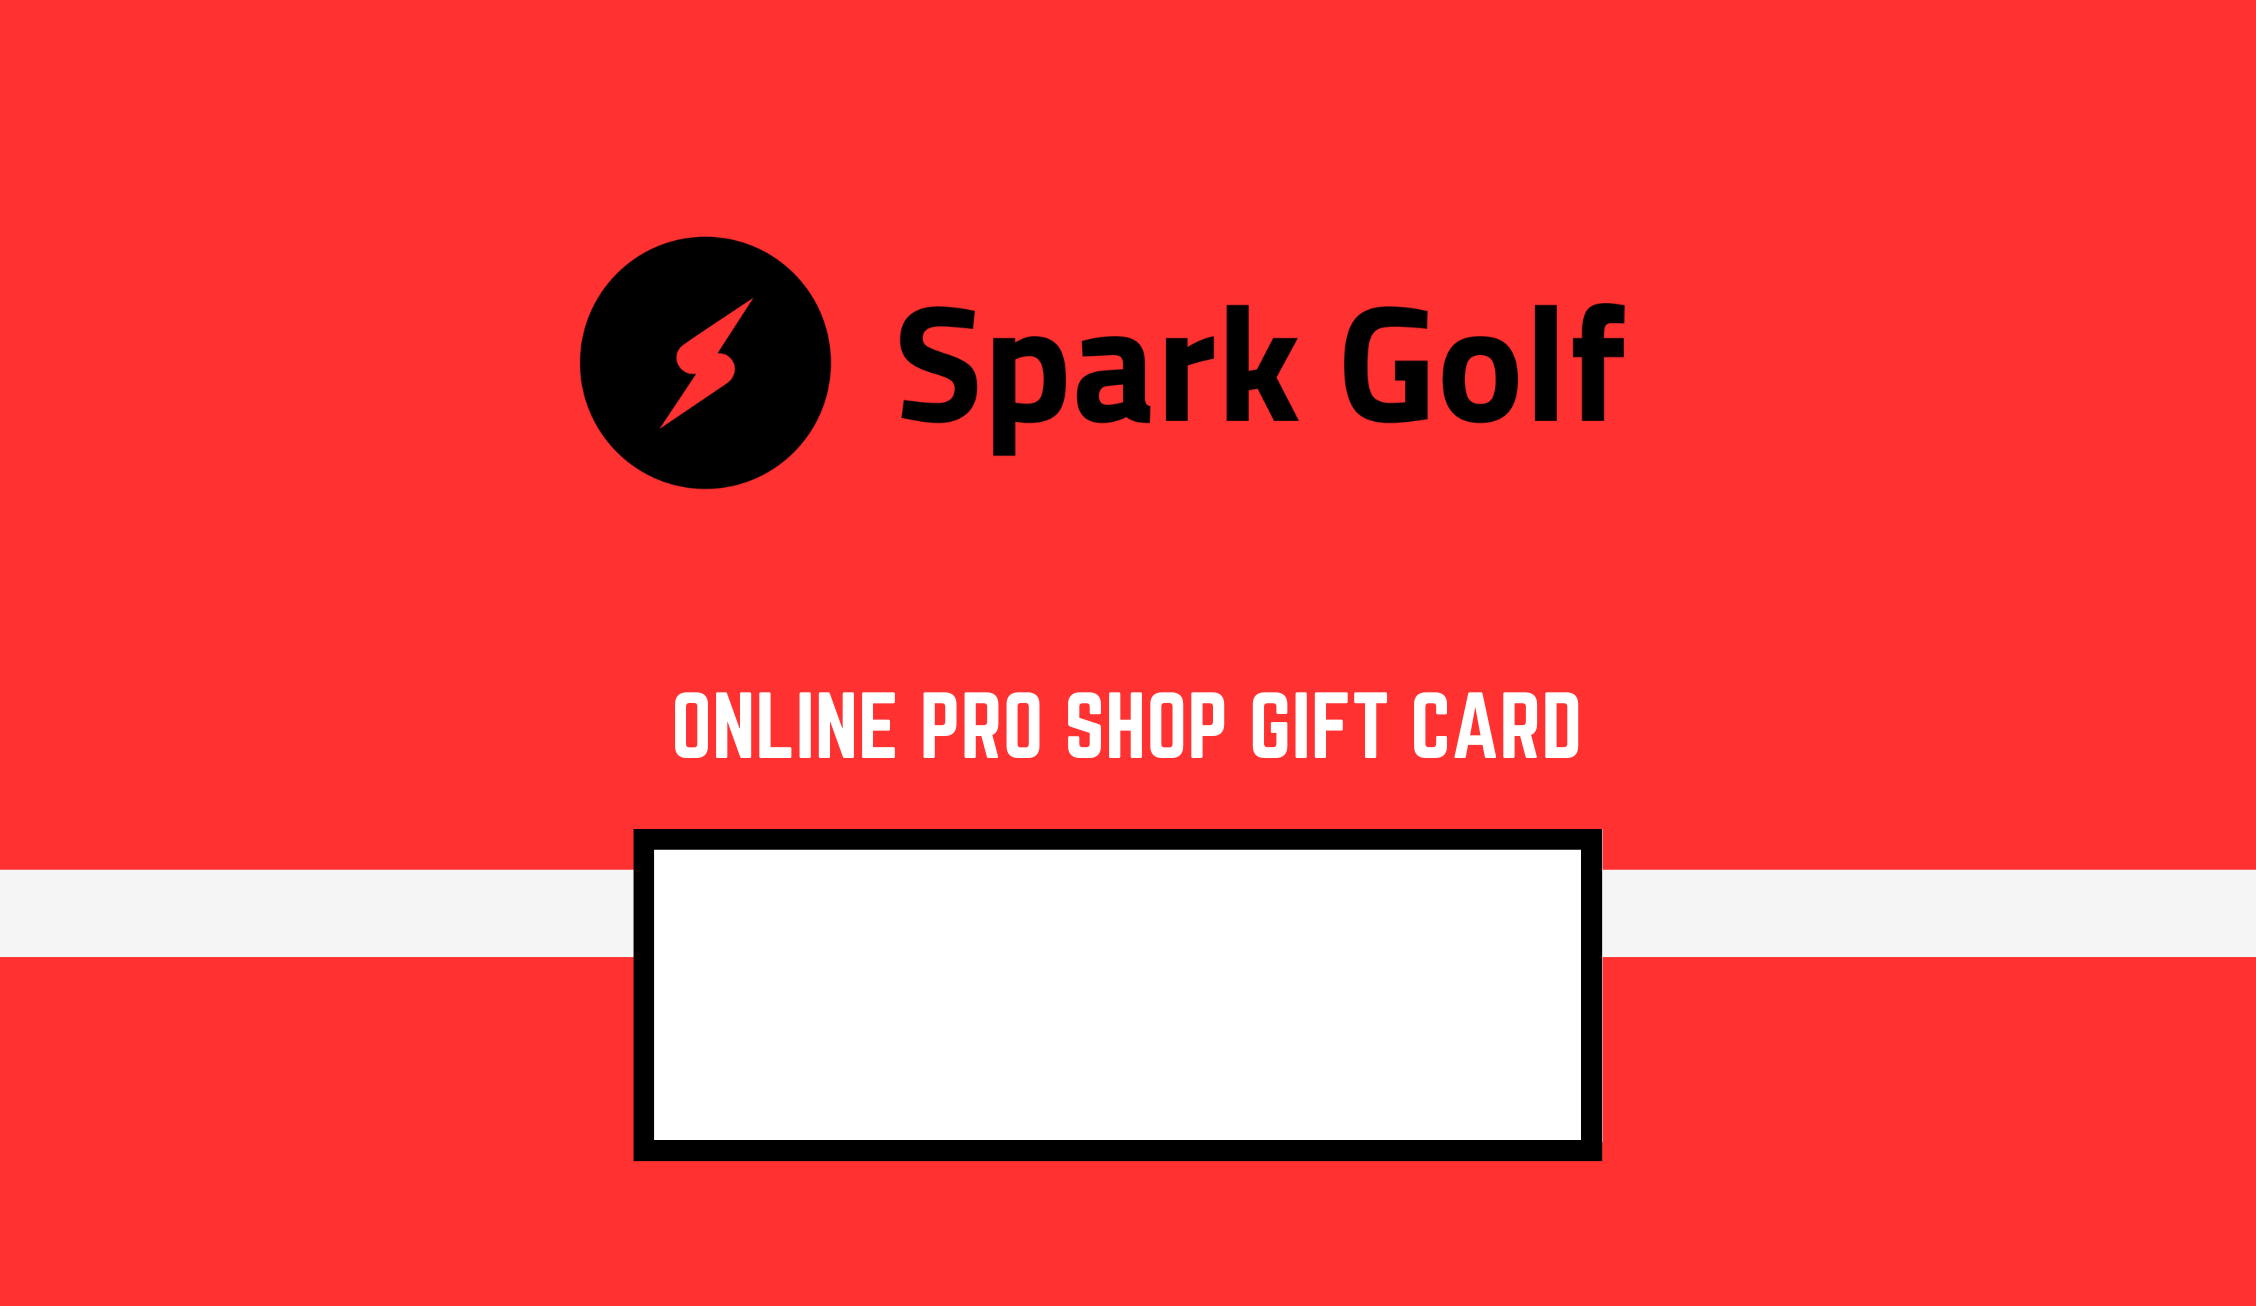 Spark Golf Online Pro Shop Gift Card